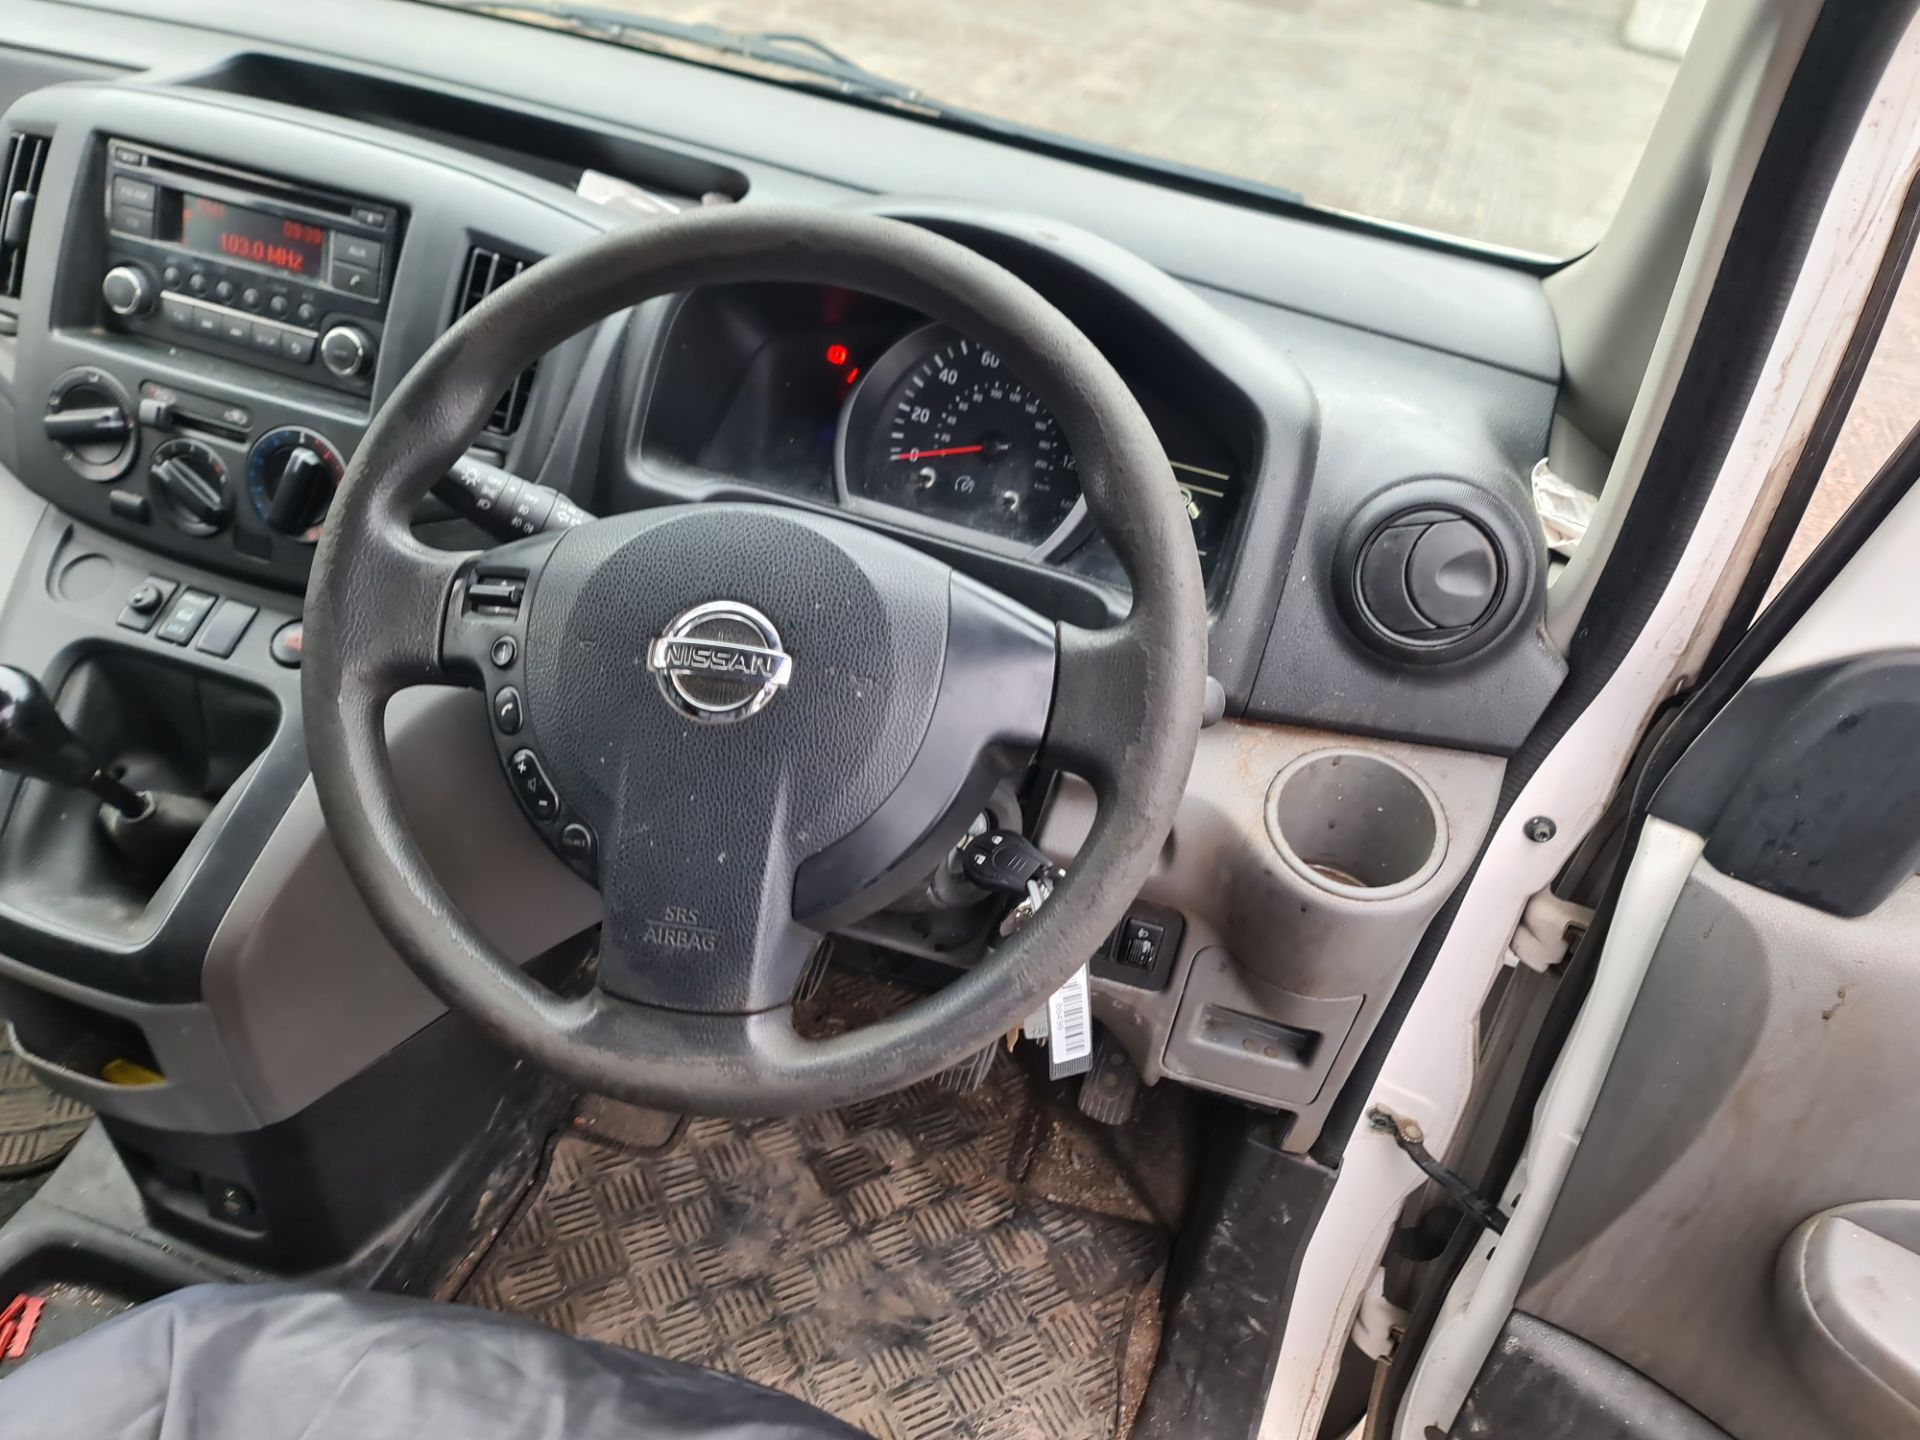 2016 Nissan NV200 Acenta DCI car derived van - Image 24 of 84